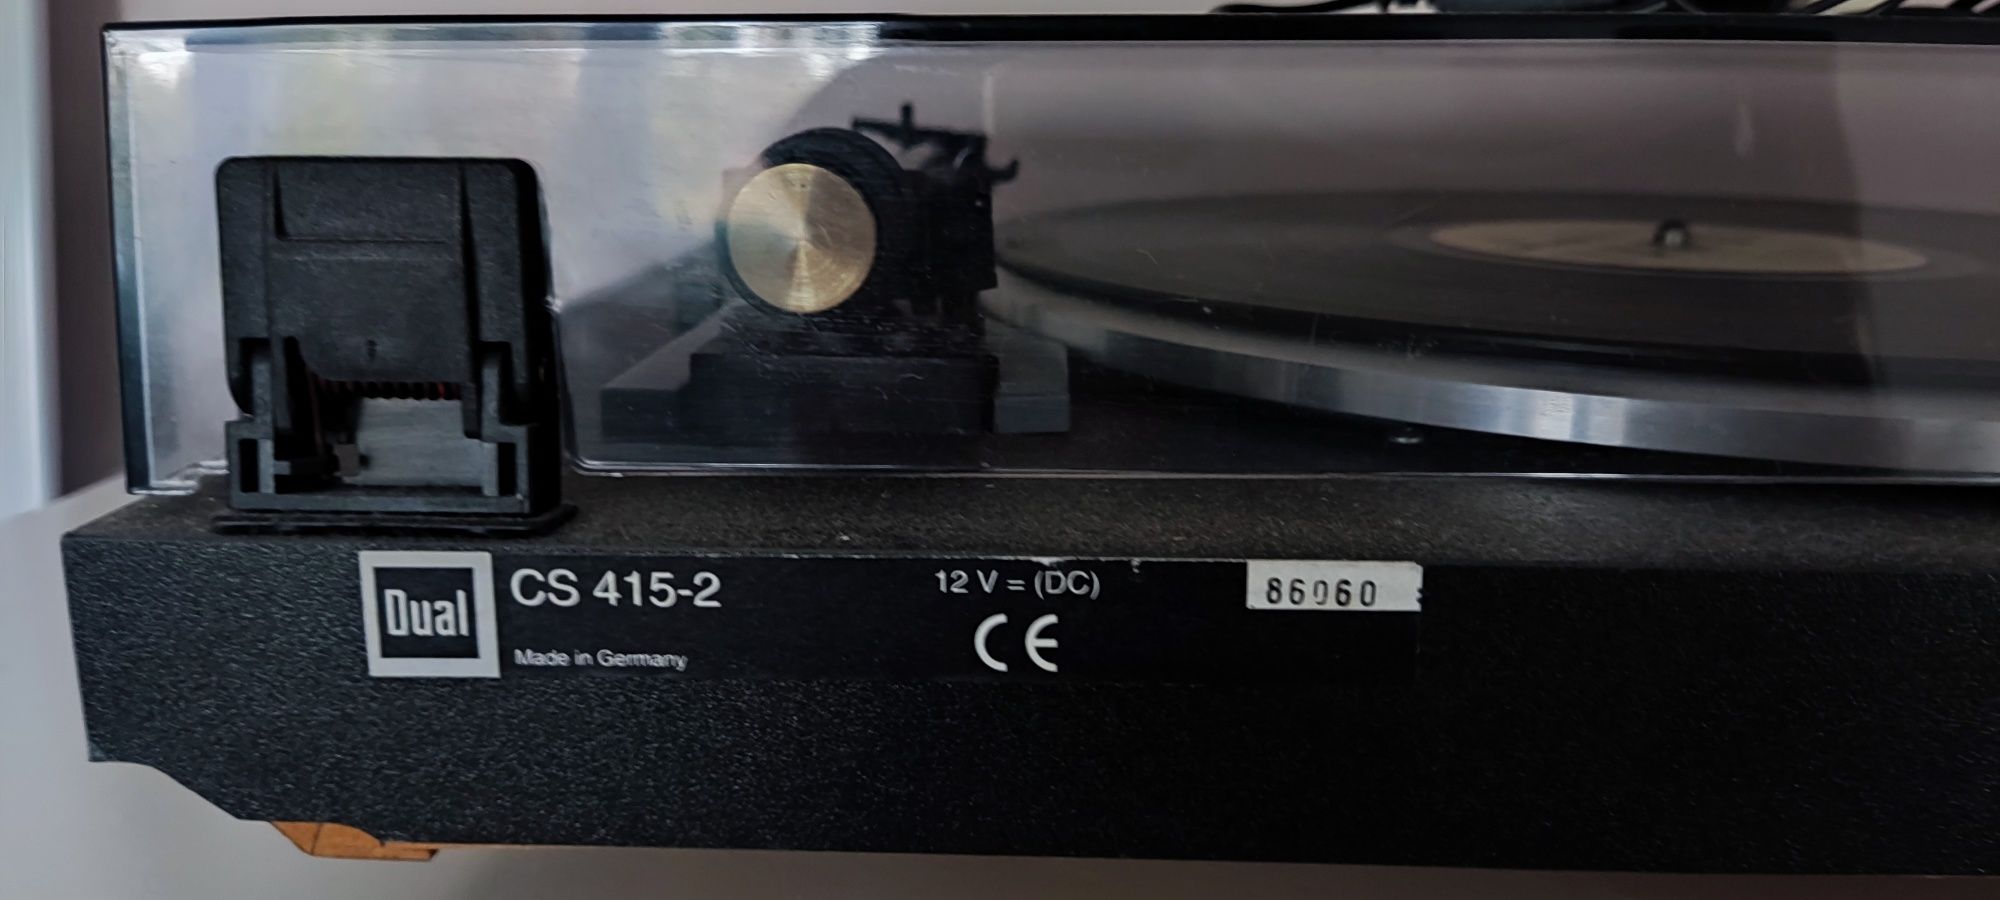 Gramofon Dual 415-2 używany czarny